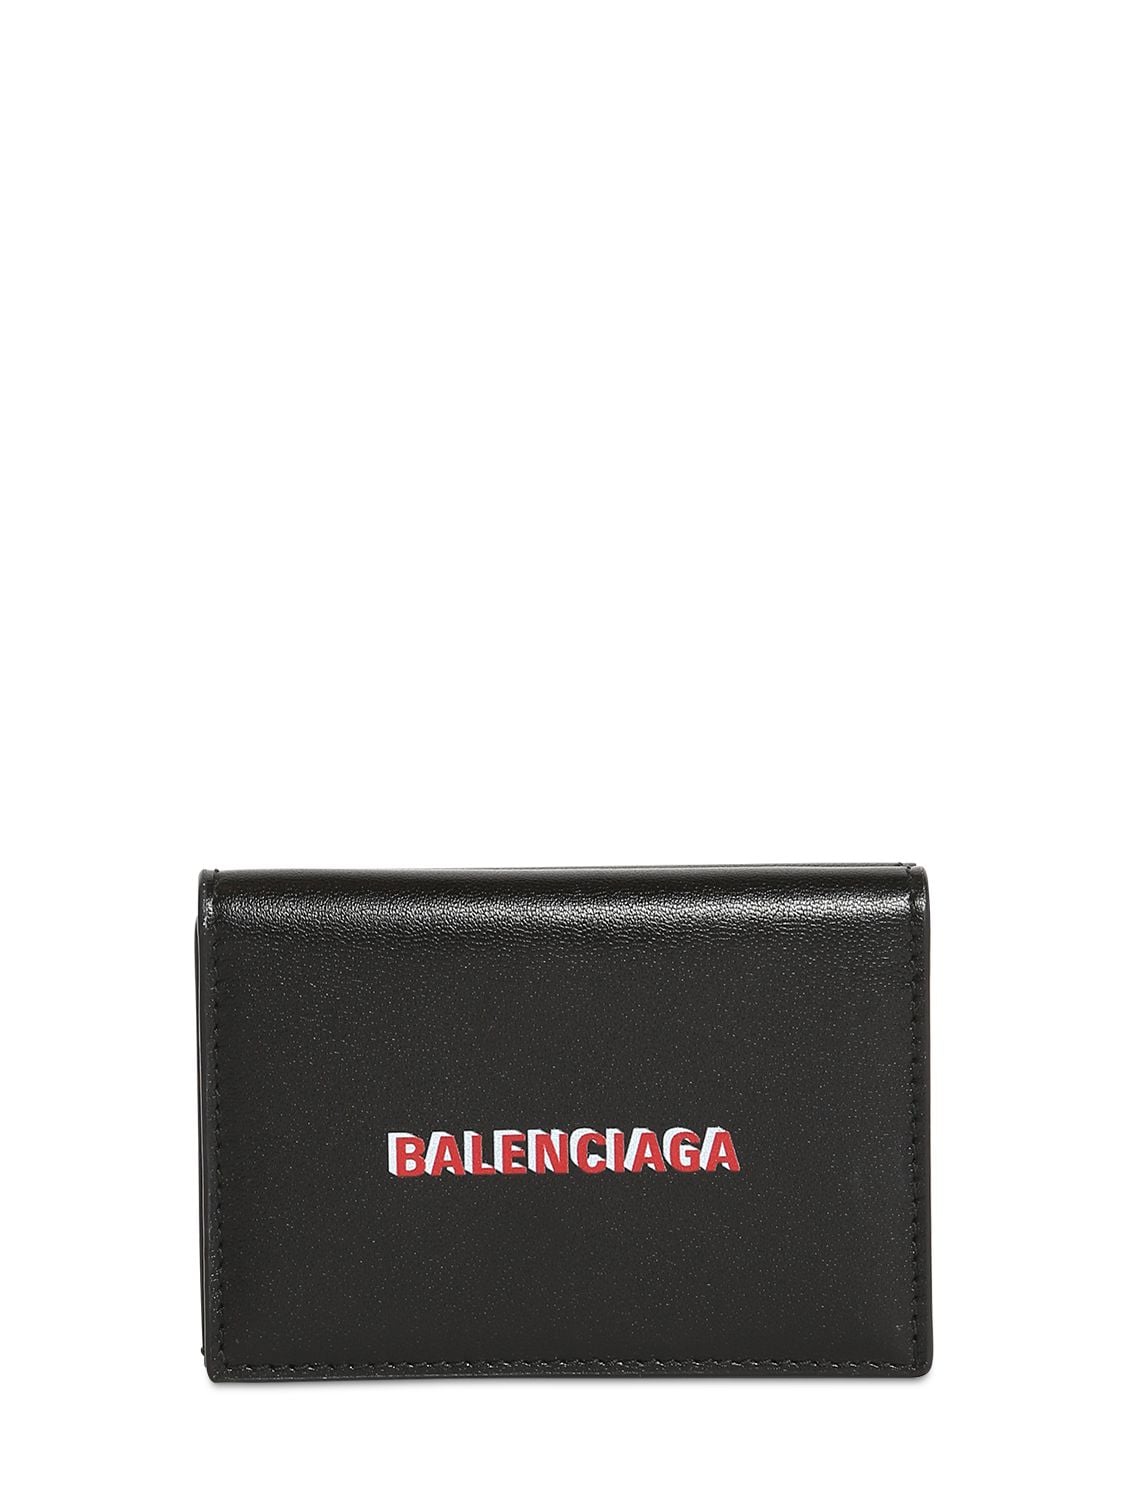 Balenciaga Double Logo Print Leather Mini Wallet In Black